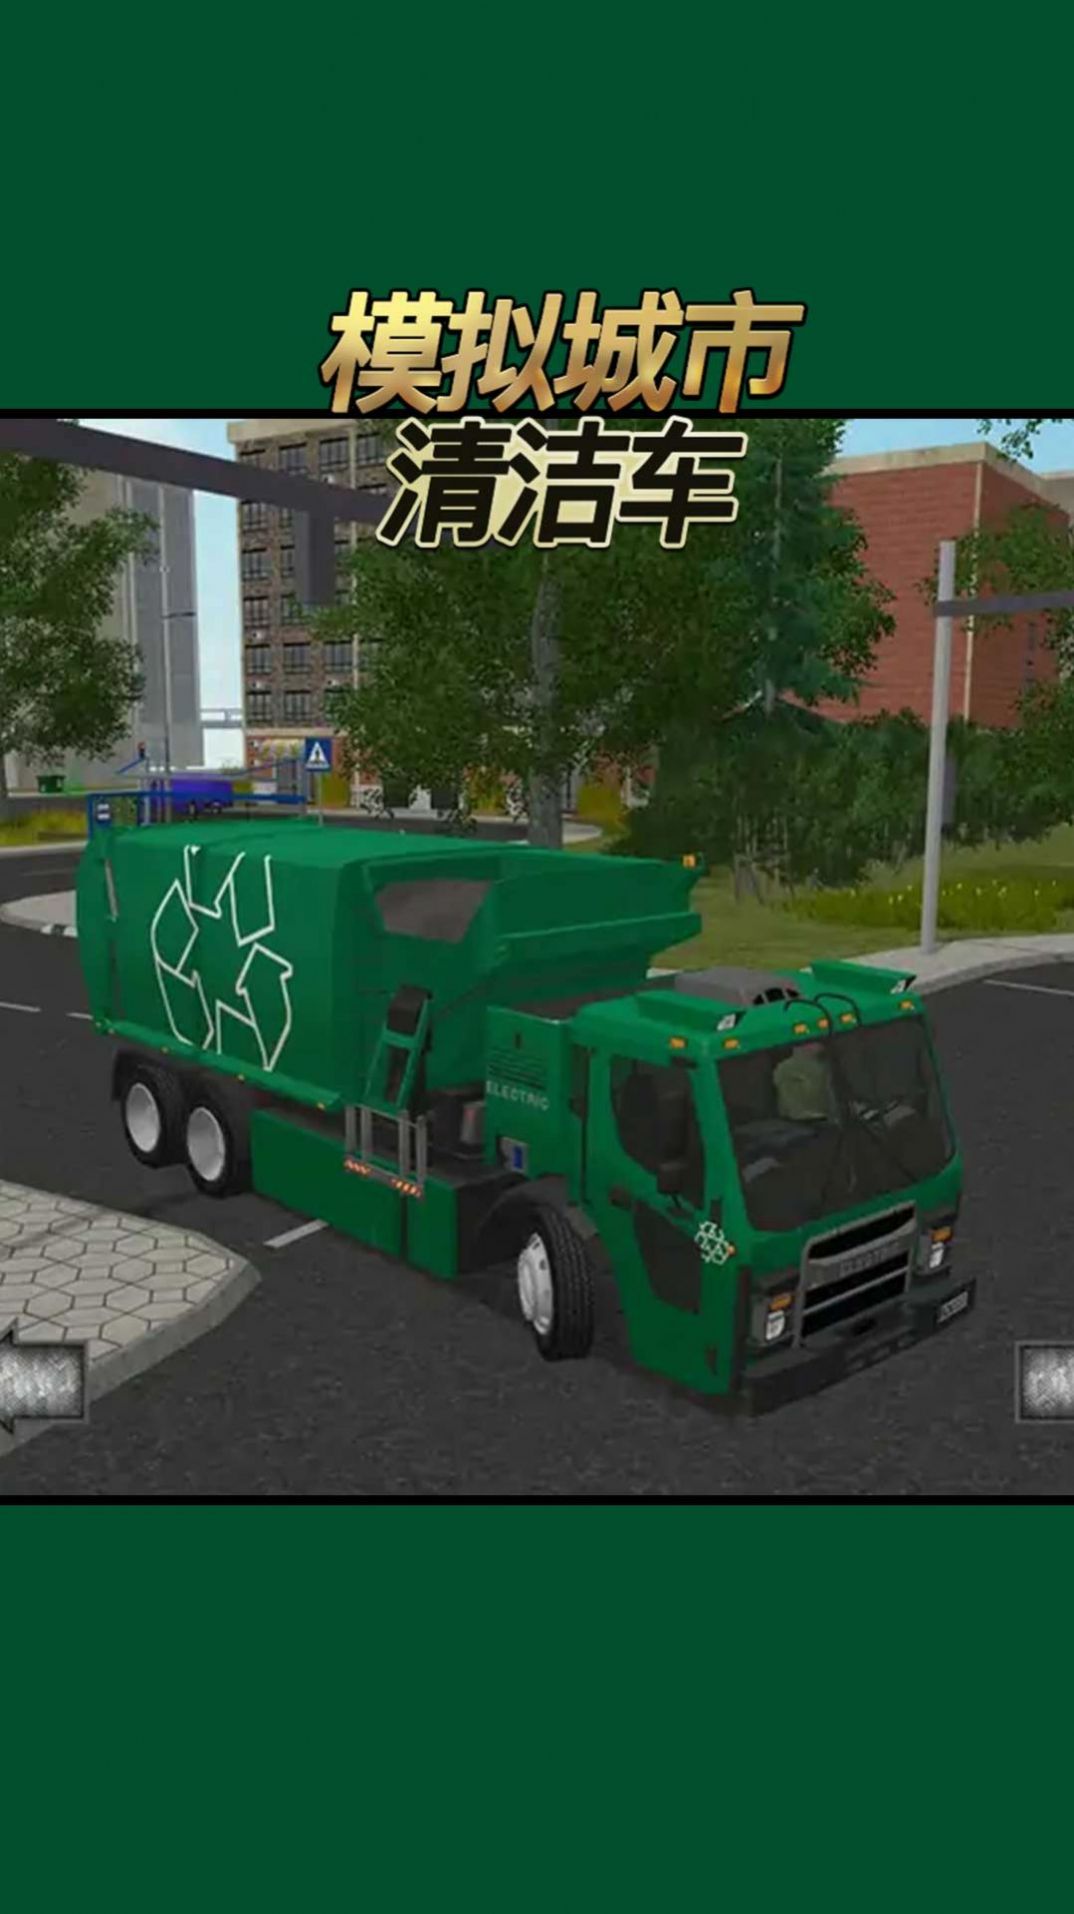 模拟城市清洁车游戏图1